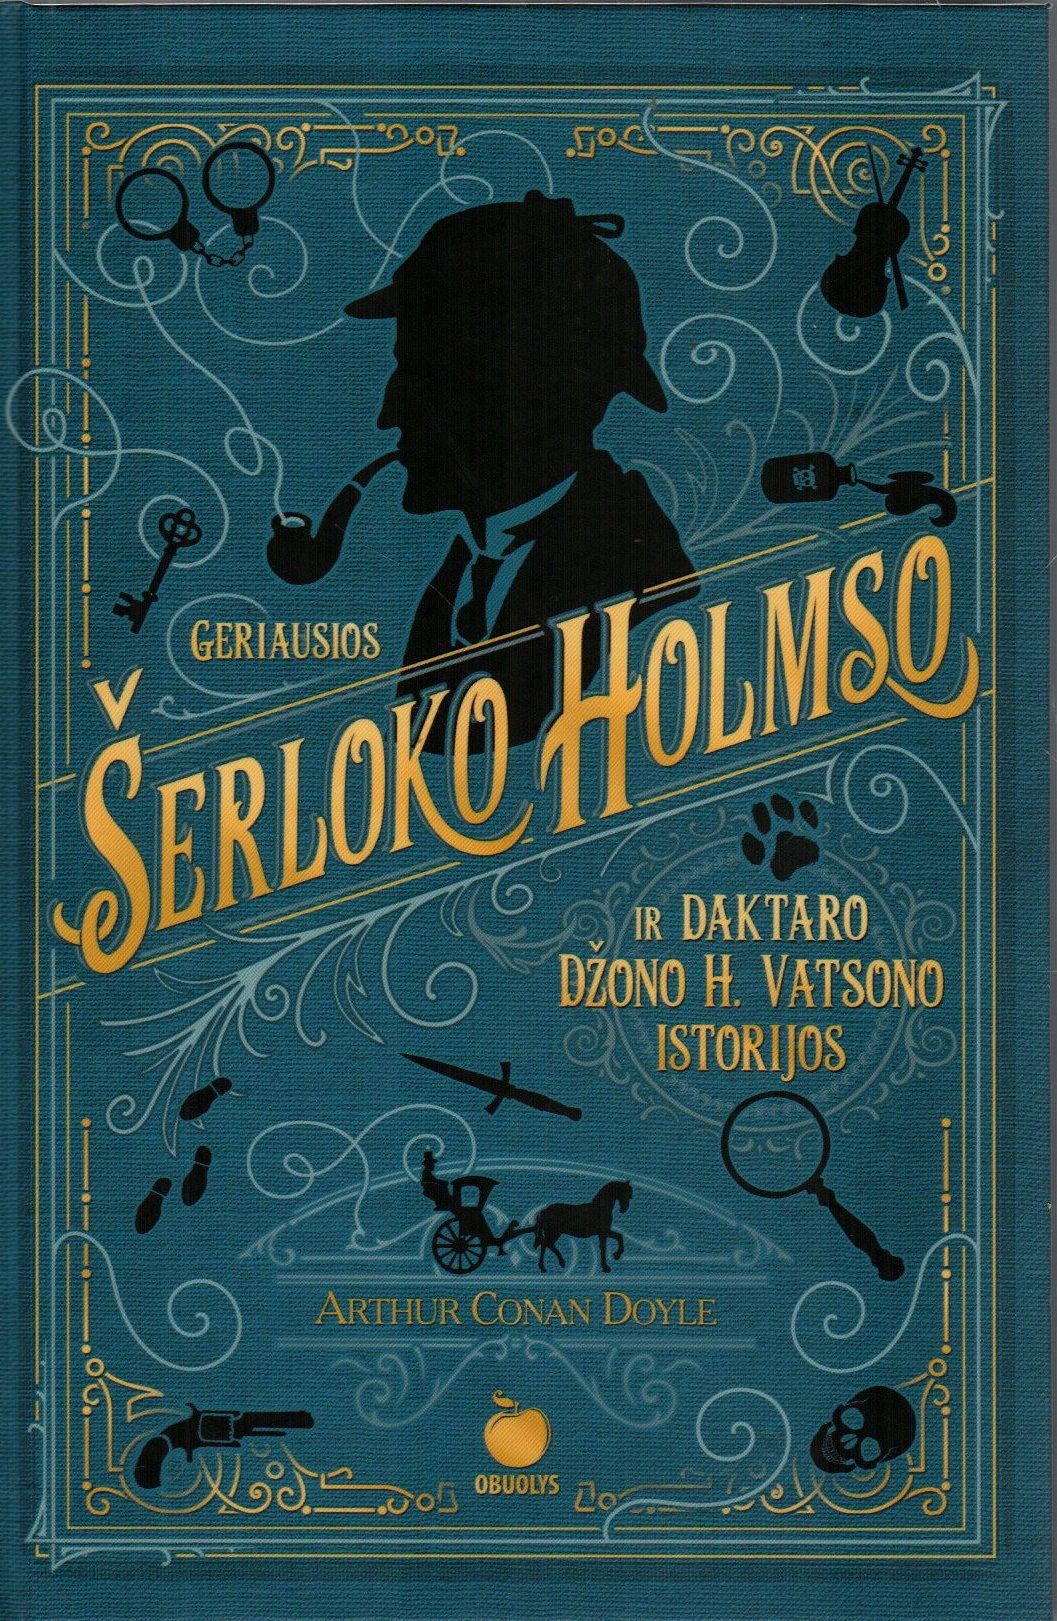 Arthur Conan Doyle. „Geriausios Šerloko Holmso ir Daktaro H. Vatsono istorijos“